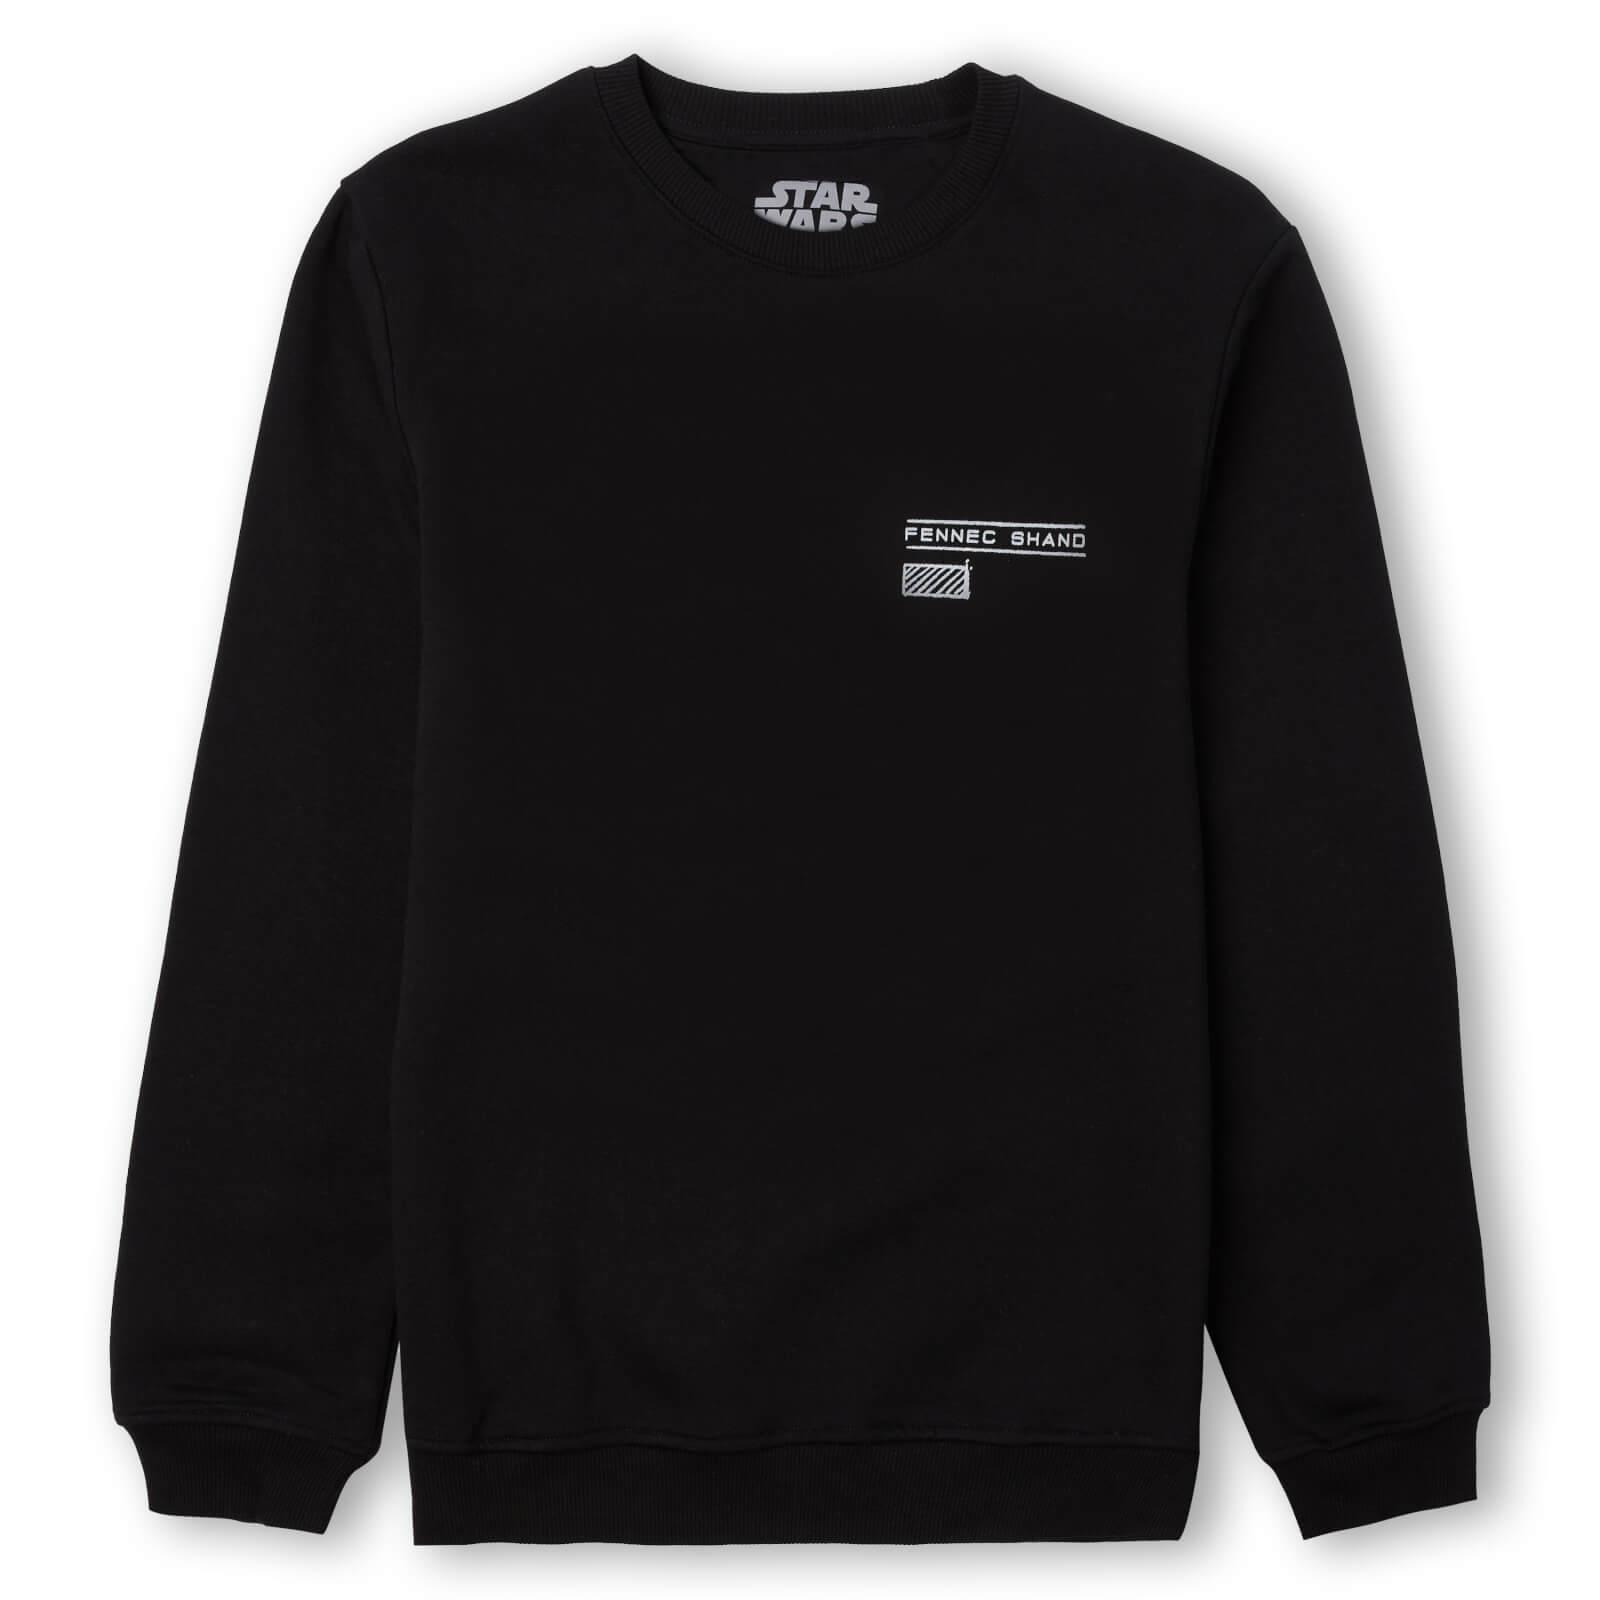 Star Wars Fennec Shand Unisex Sweatshirt - Black - S - Zwart